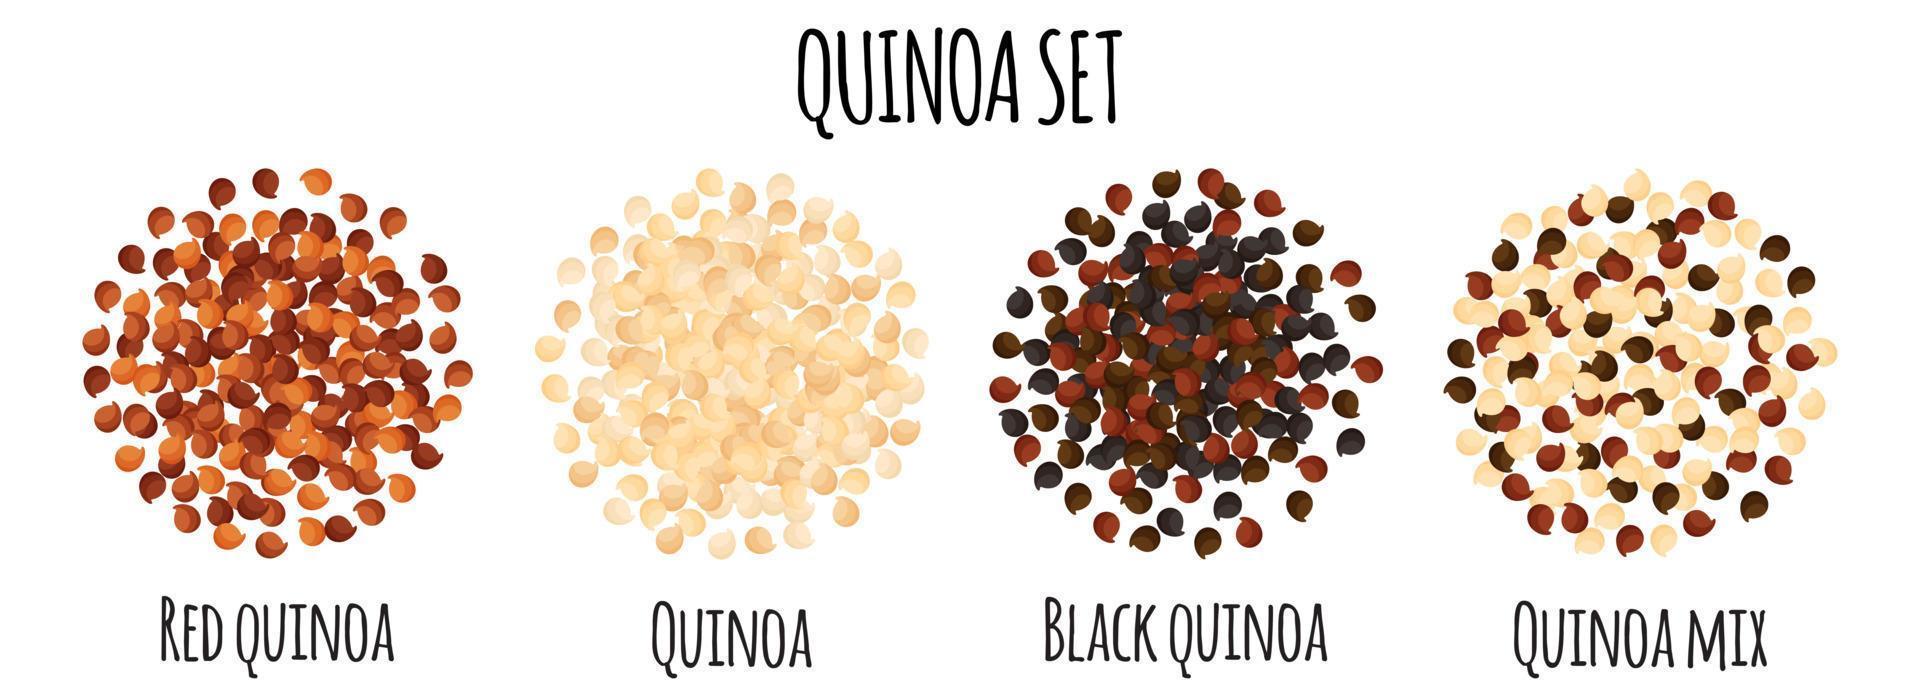 quinoa serti de quinoa rouge, blanc, noir et mix. vecteur